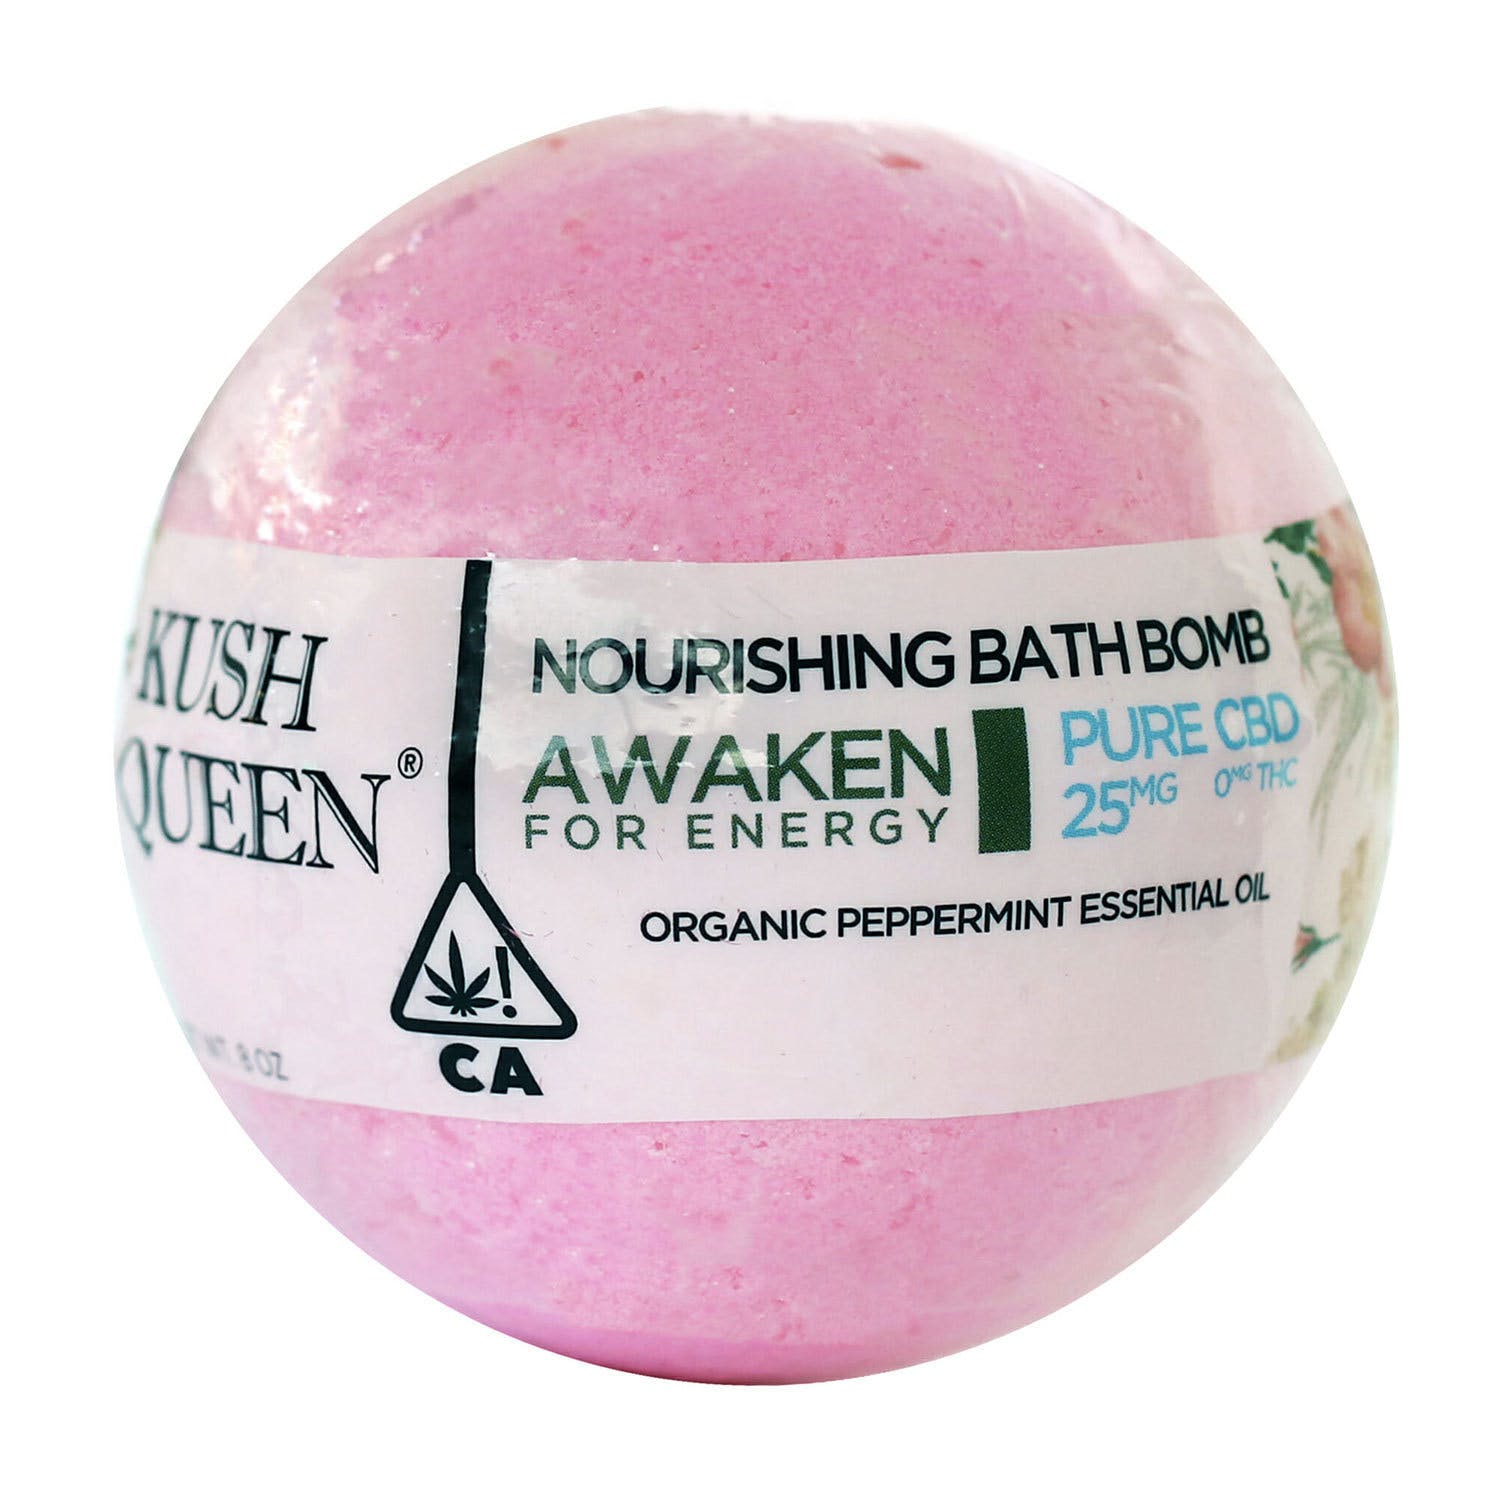 kush Queen - Awaken Bath Bomb Pure CBD 25mg